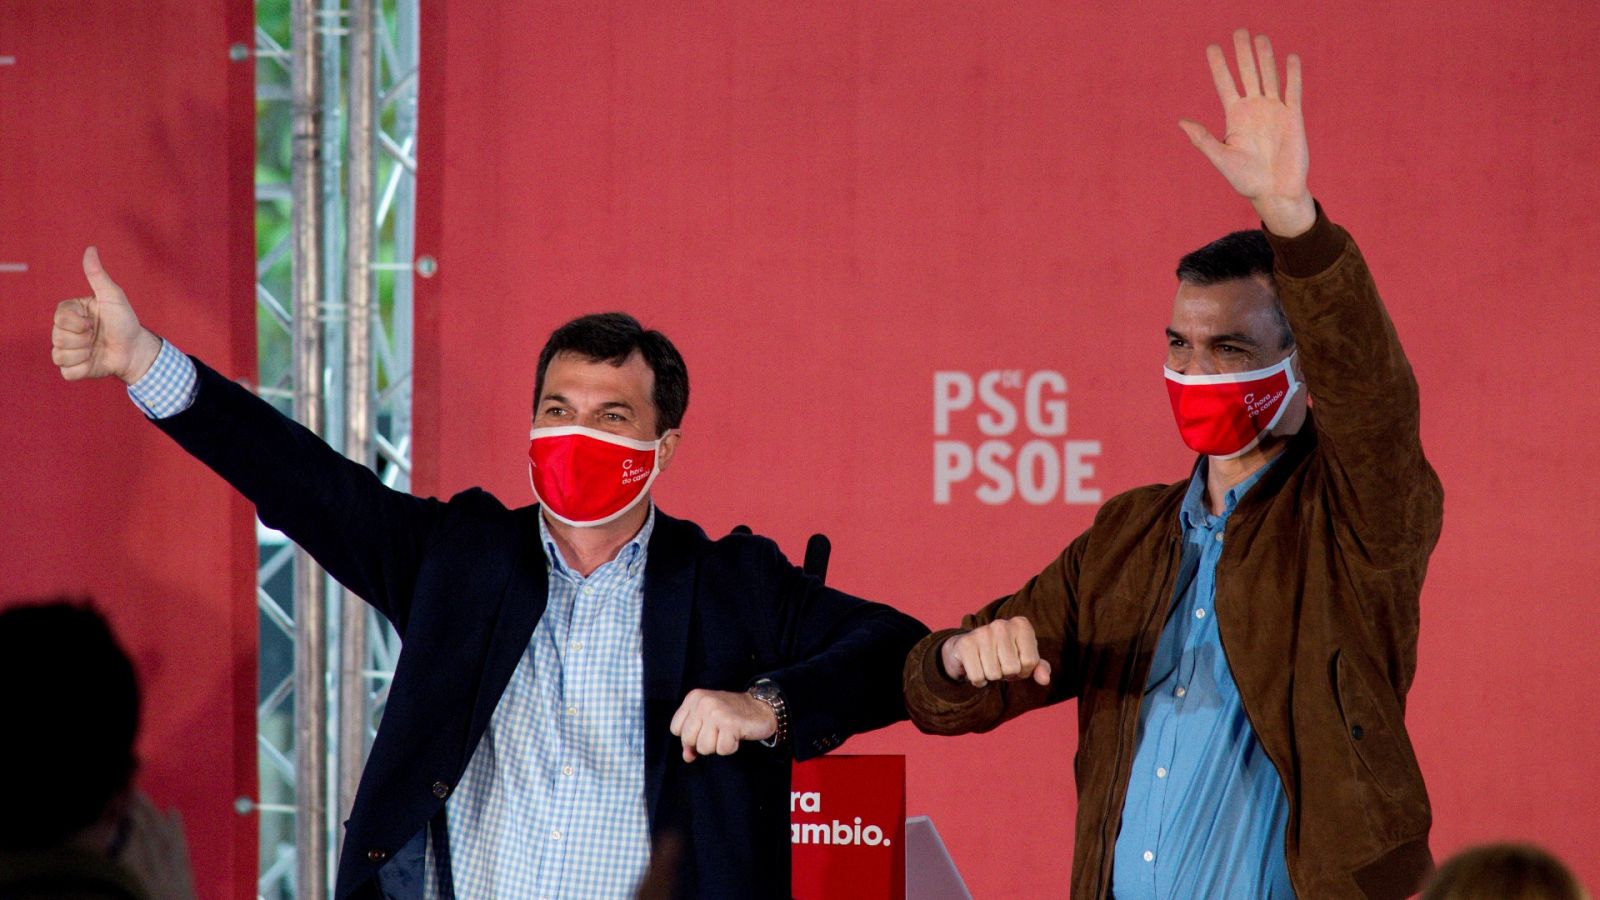 Elecciones gallegas | Sánchez: "Ante la crisis solo hay dos modelos: PP o PSOE" - RTVE.es